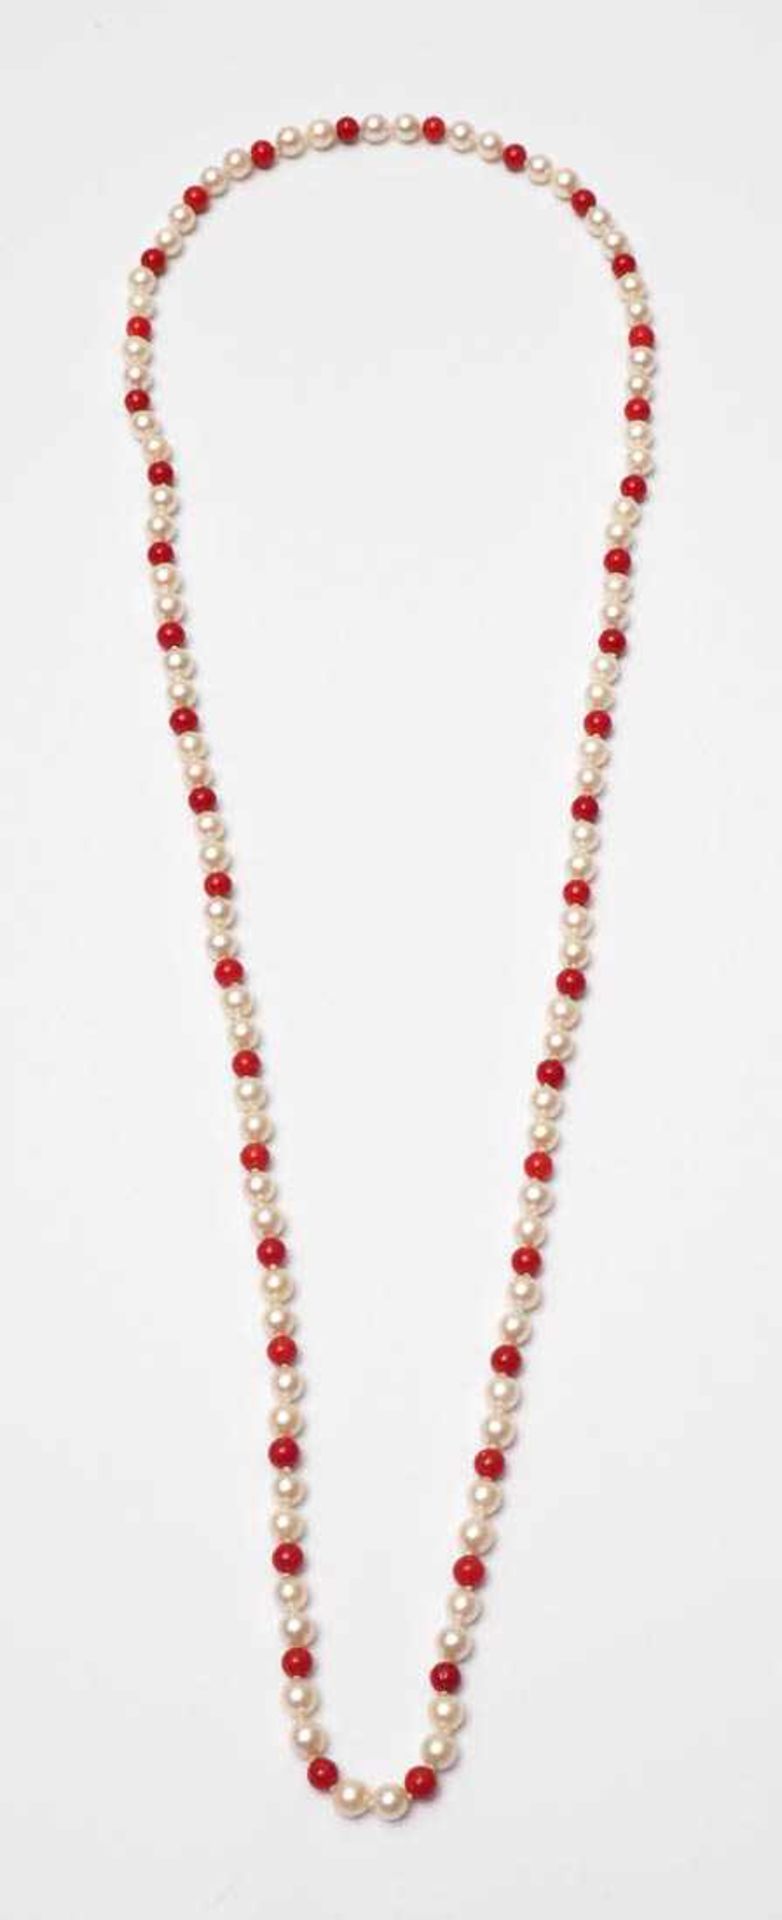 Halskette Zuchtperlen mit Korallkugeln. L.78cm (endlos). - Bild 2 aus 2